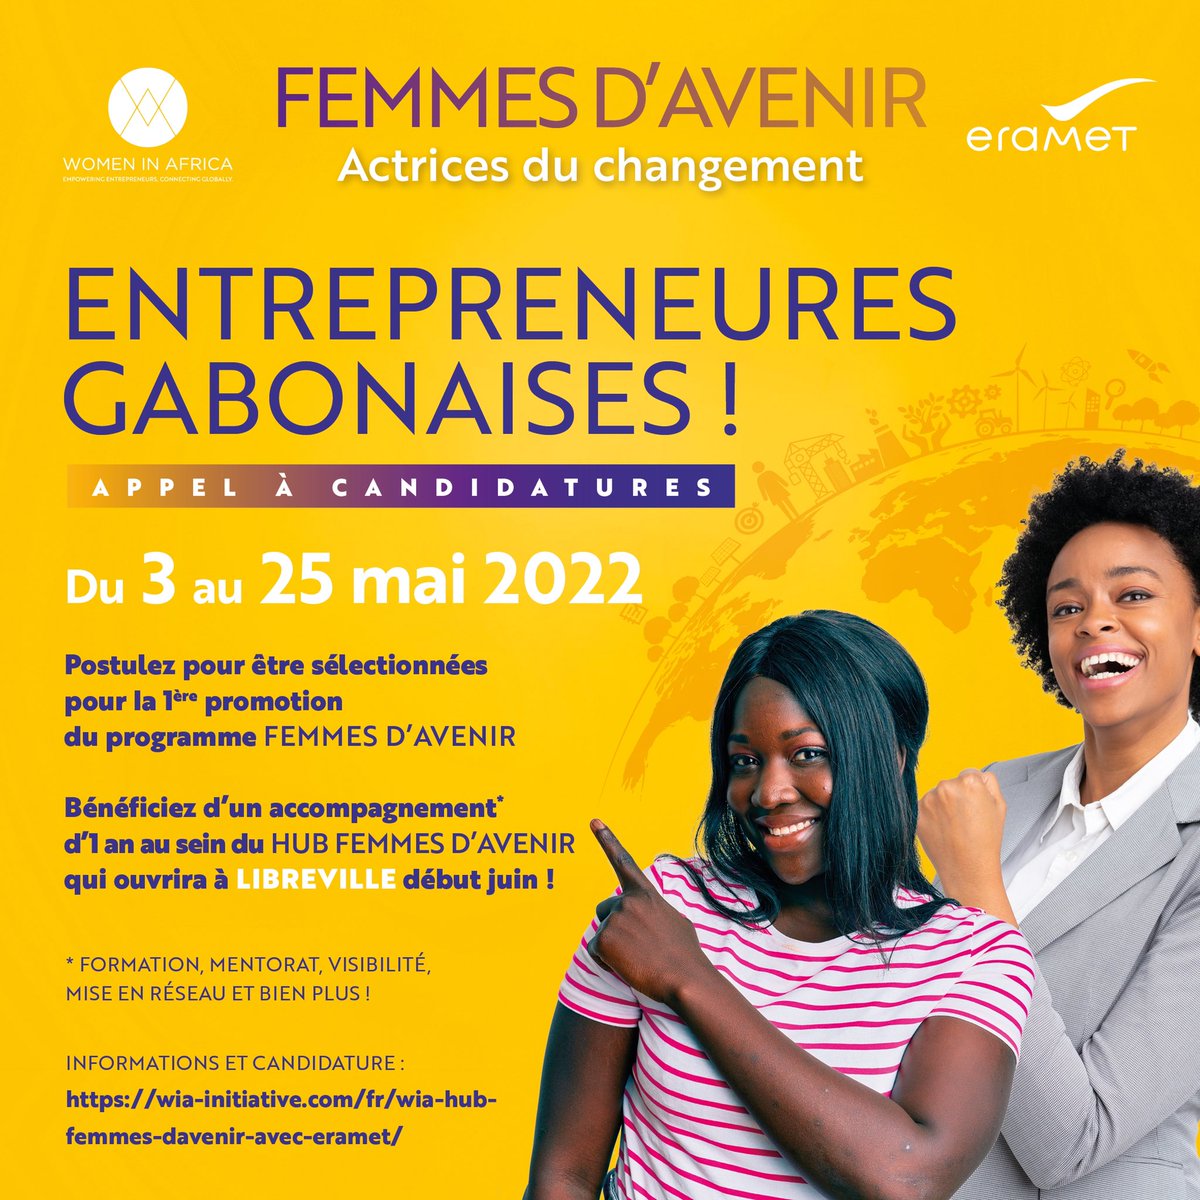 #femmes entrepreneures gabonaises : ne ratez pas cette opportunité de bénéficier d'un accompagnement du groupe
#eramet et l'association #womeninafrica!
Inscrivez-vous et faites partie de la 1ère promotion de Femmes d'avenir
#entrepreunariat féminin #leadership
#réseautage #gabon